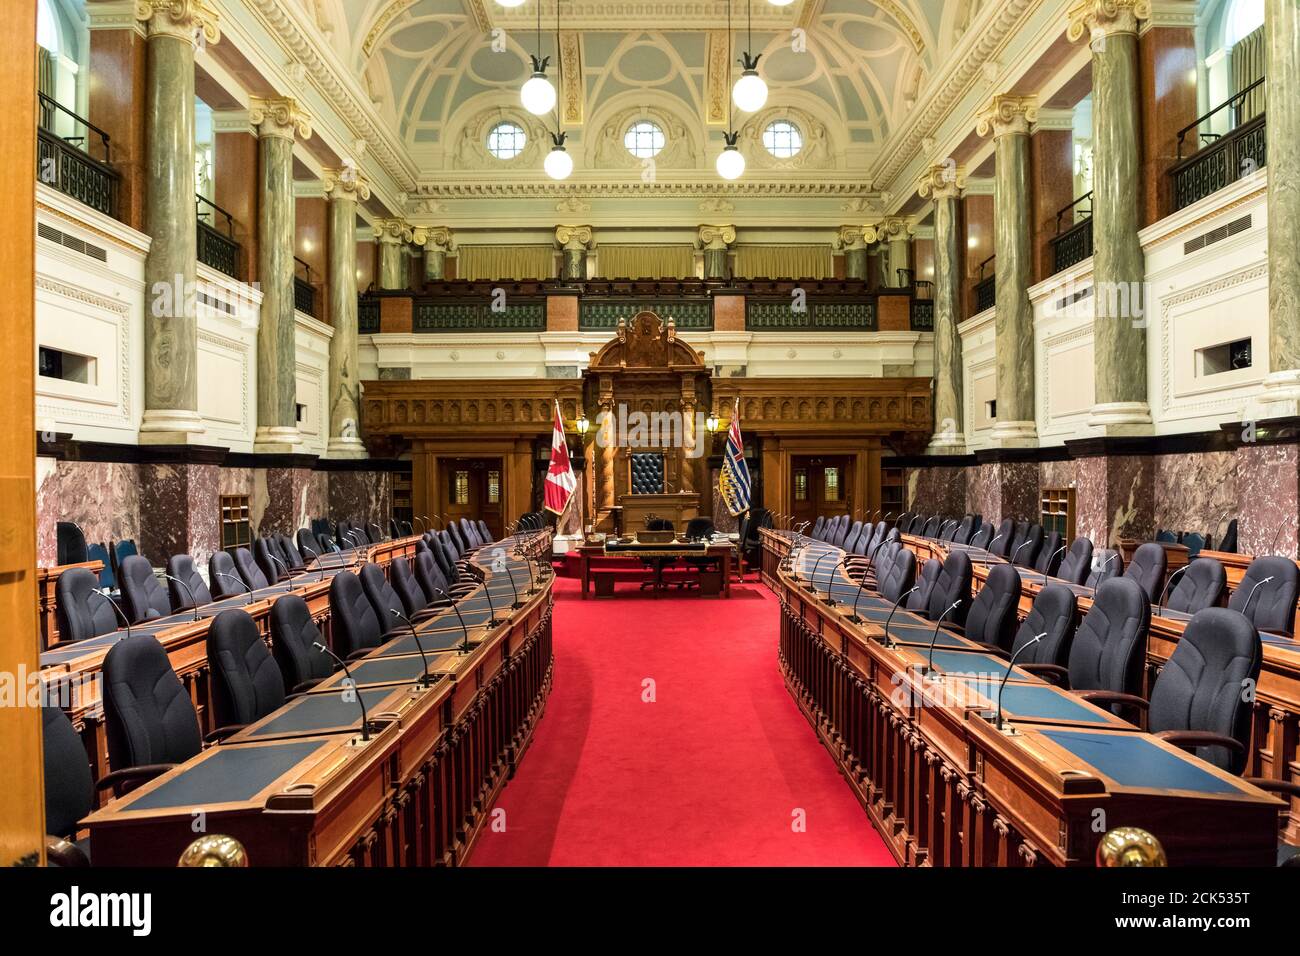 Intérieur de la Chambre législative provinciale de la Colombie-Britannique, à Victoria, C.-B., Canada Banque D'Images